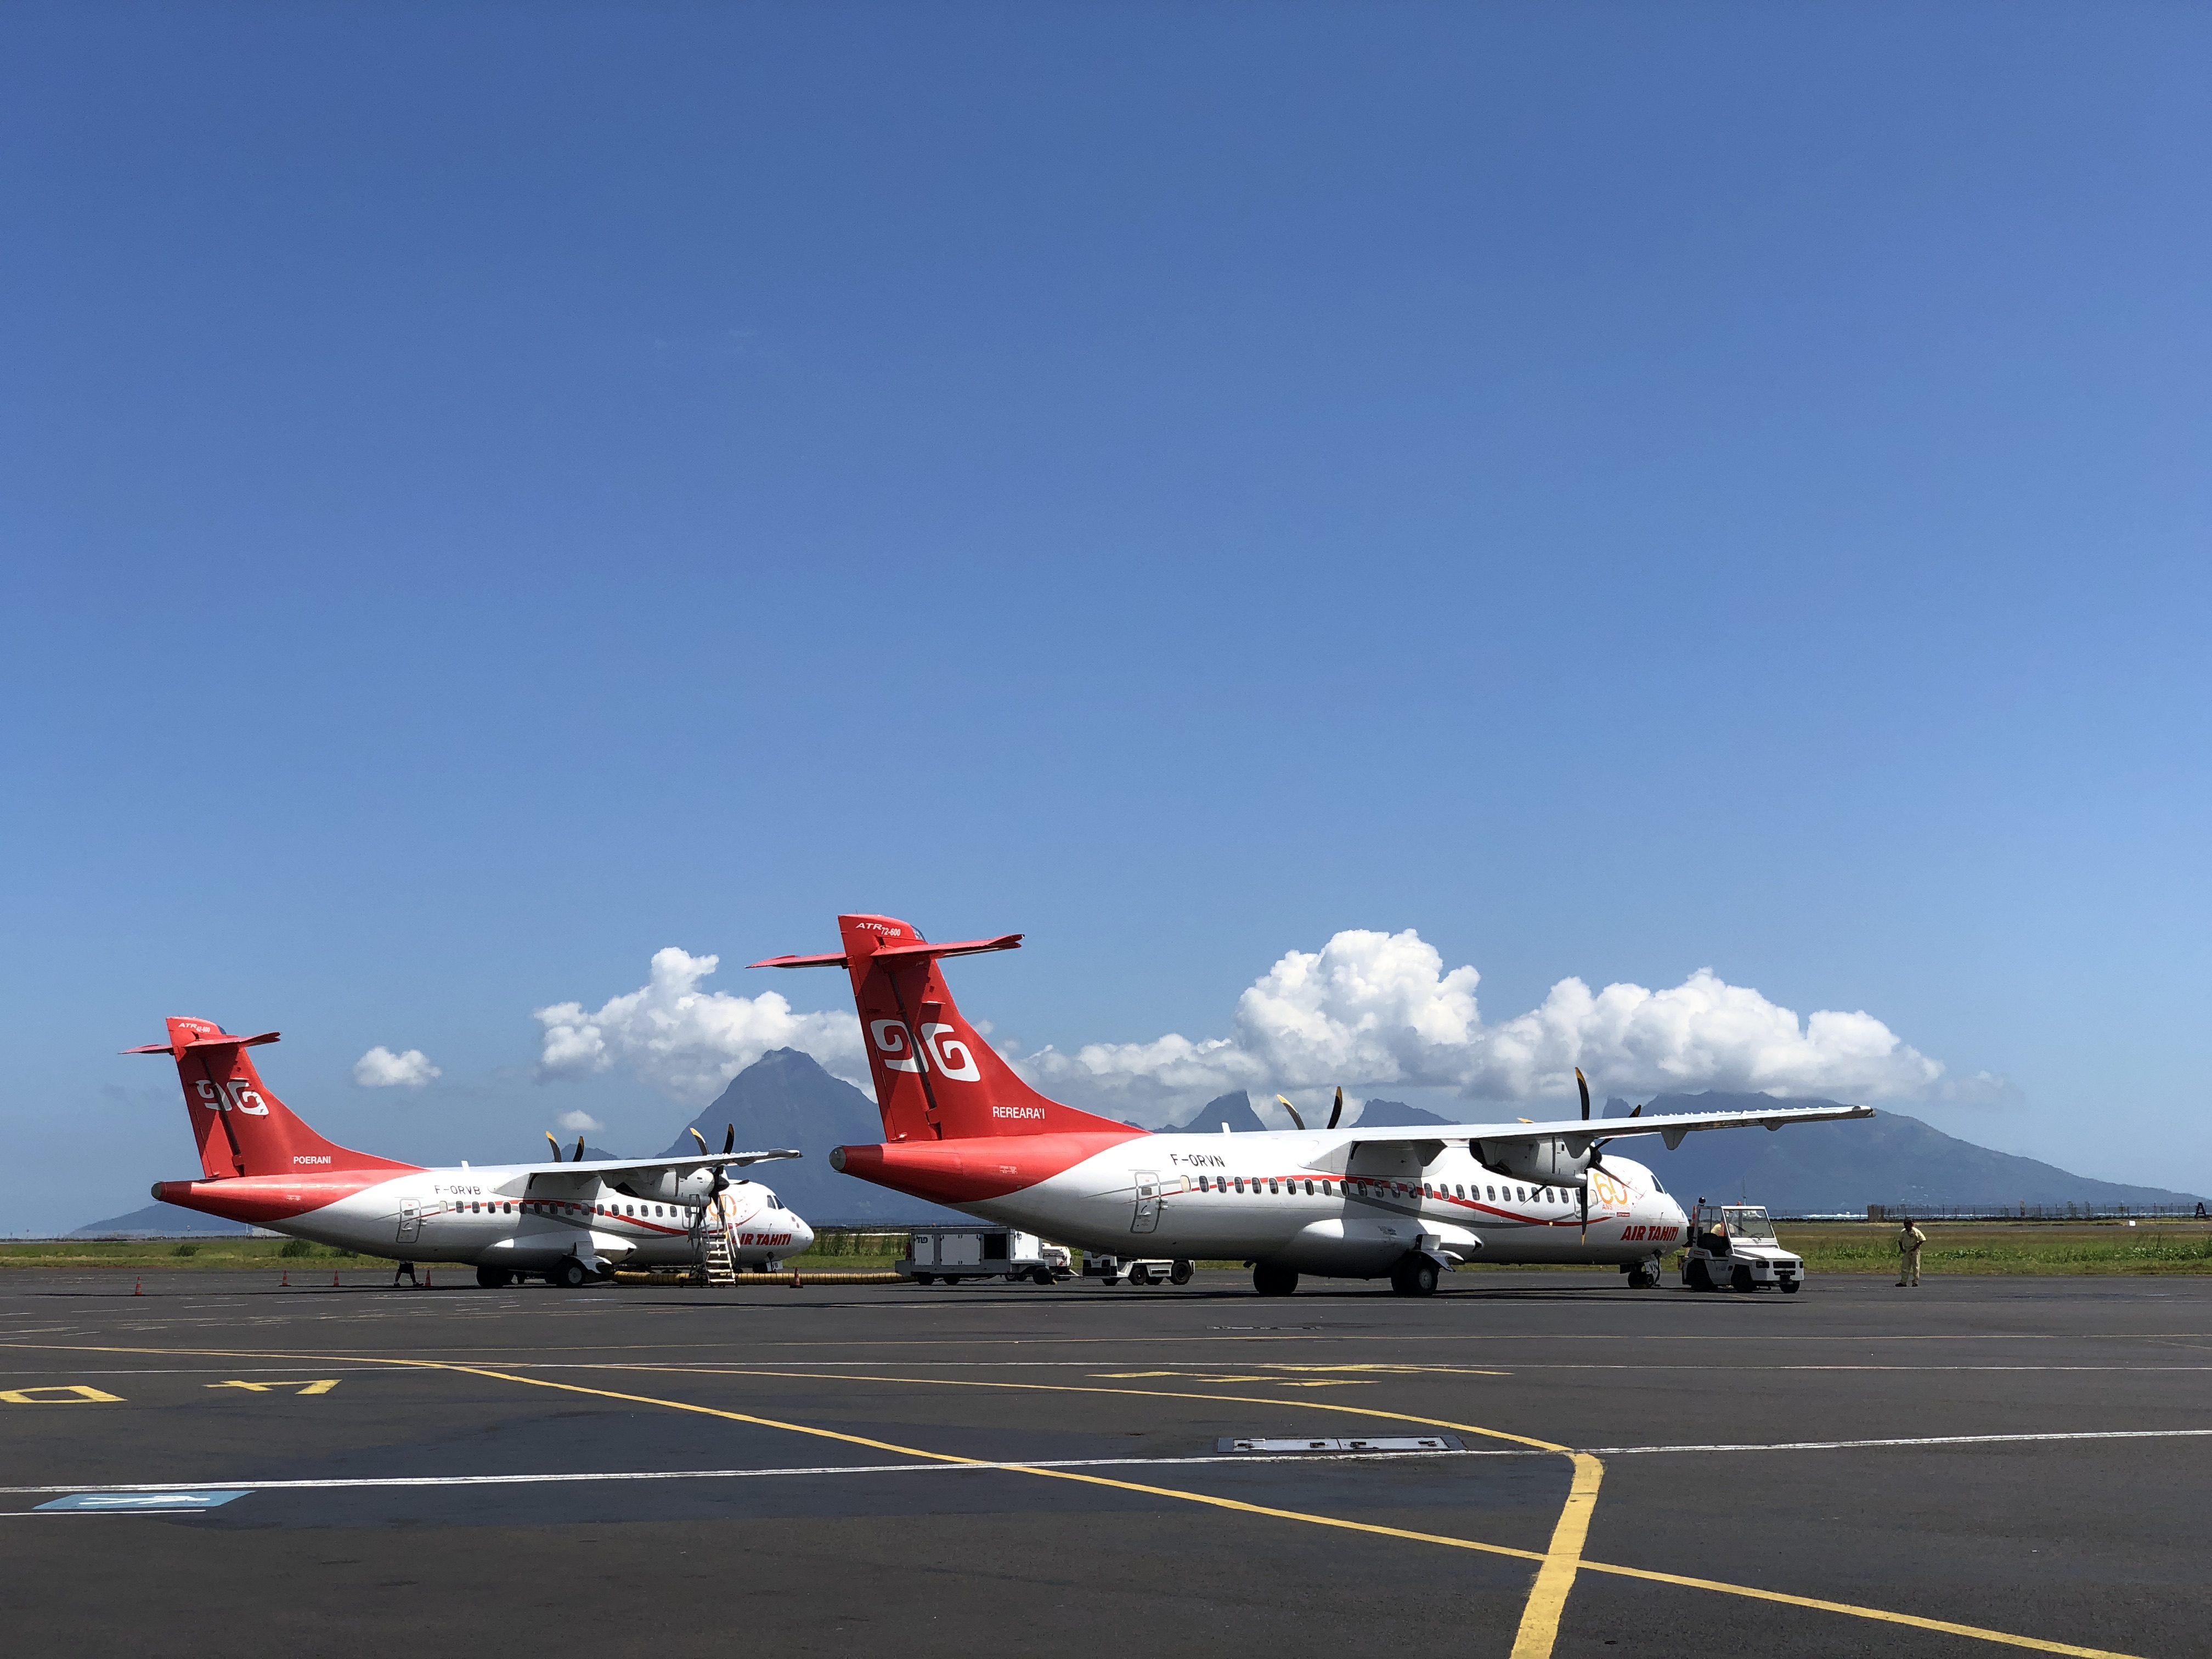 A partir de juillet prochain, une taxe de 300 à 900 Fcfp sera prélevée sur la vente de chaque billet d’avion inter-îles pour financer le fonds de péréquation et de continuité territoriale du transport aérien interinsulaire.